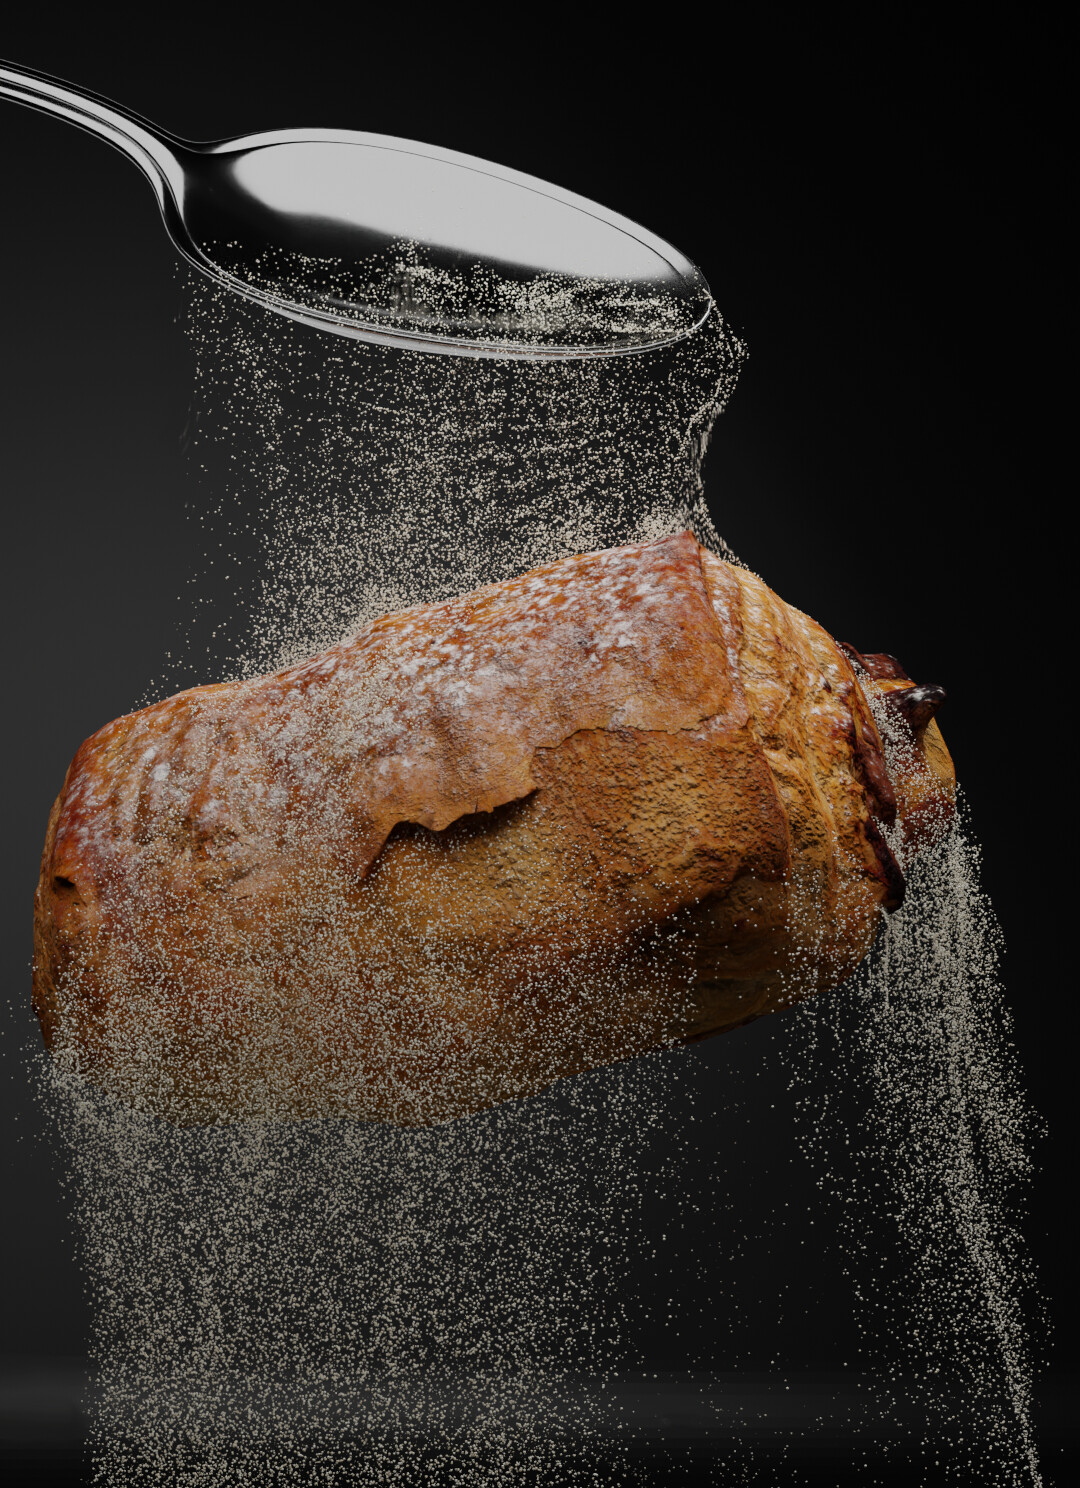 Хлеб сахар вода. Хлеб с сахаром. Sugar Bread. Сахар и хлеб фото мкгазин человек фоткает. Хлеб сахар сфоткал человек.